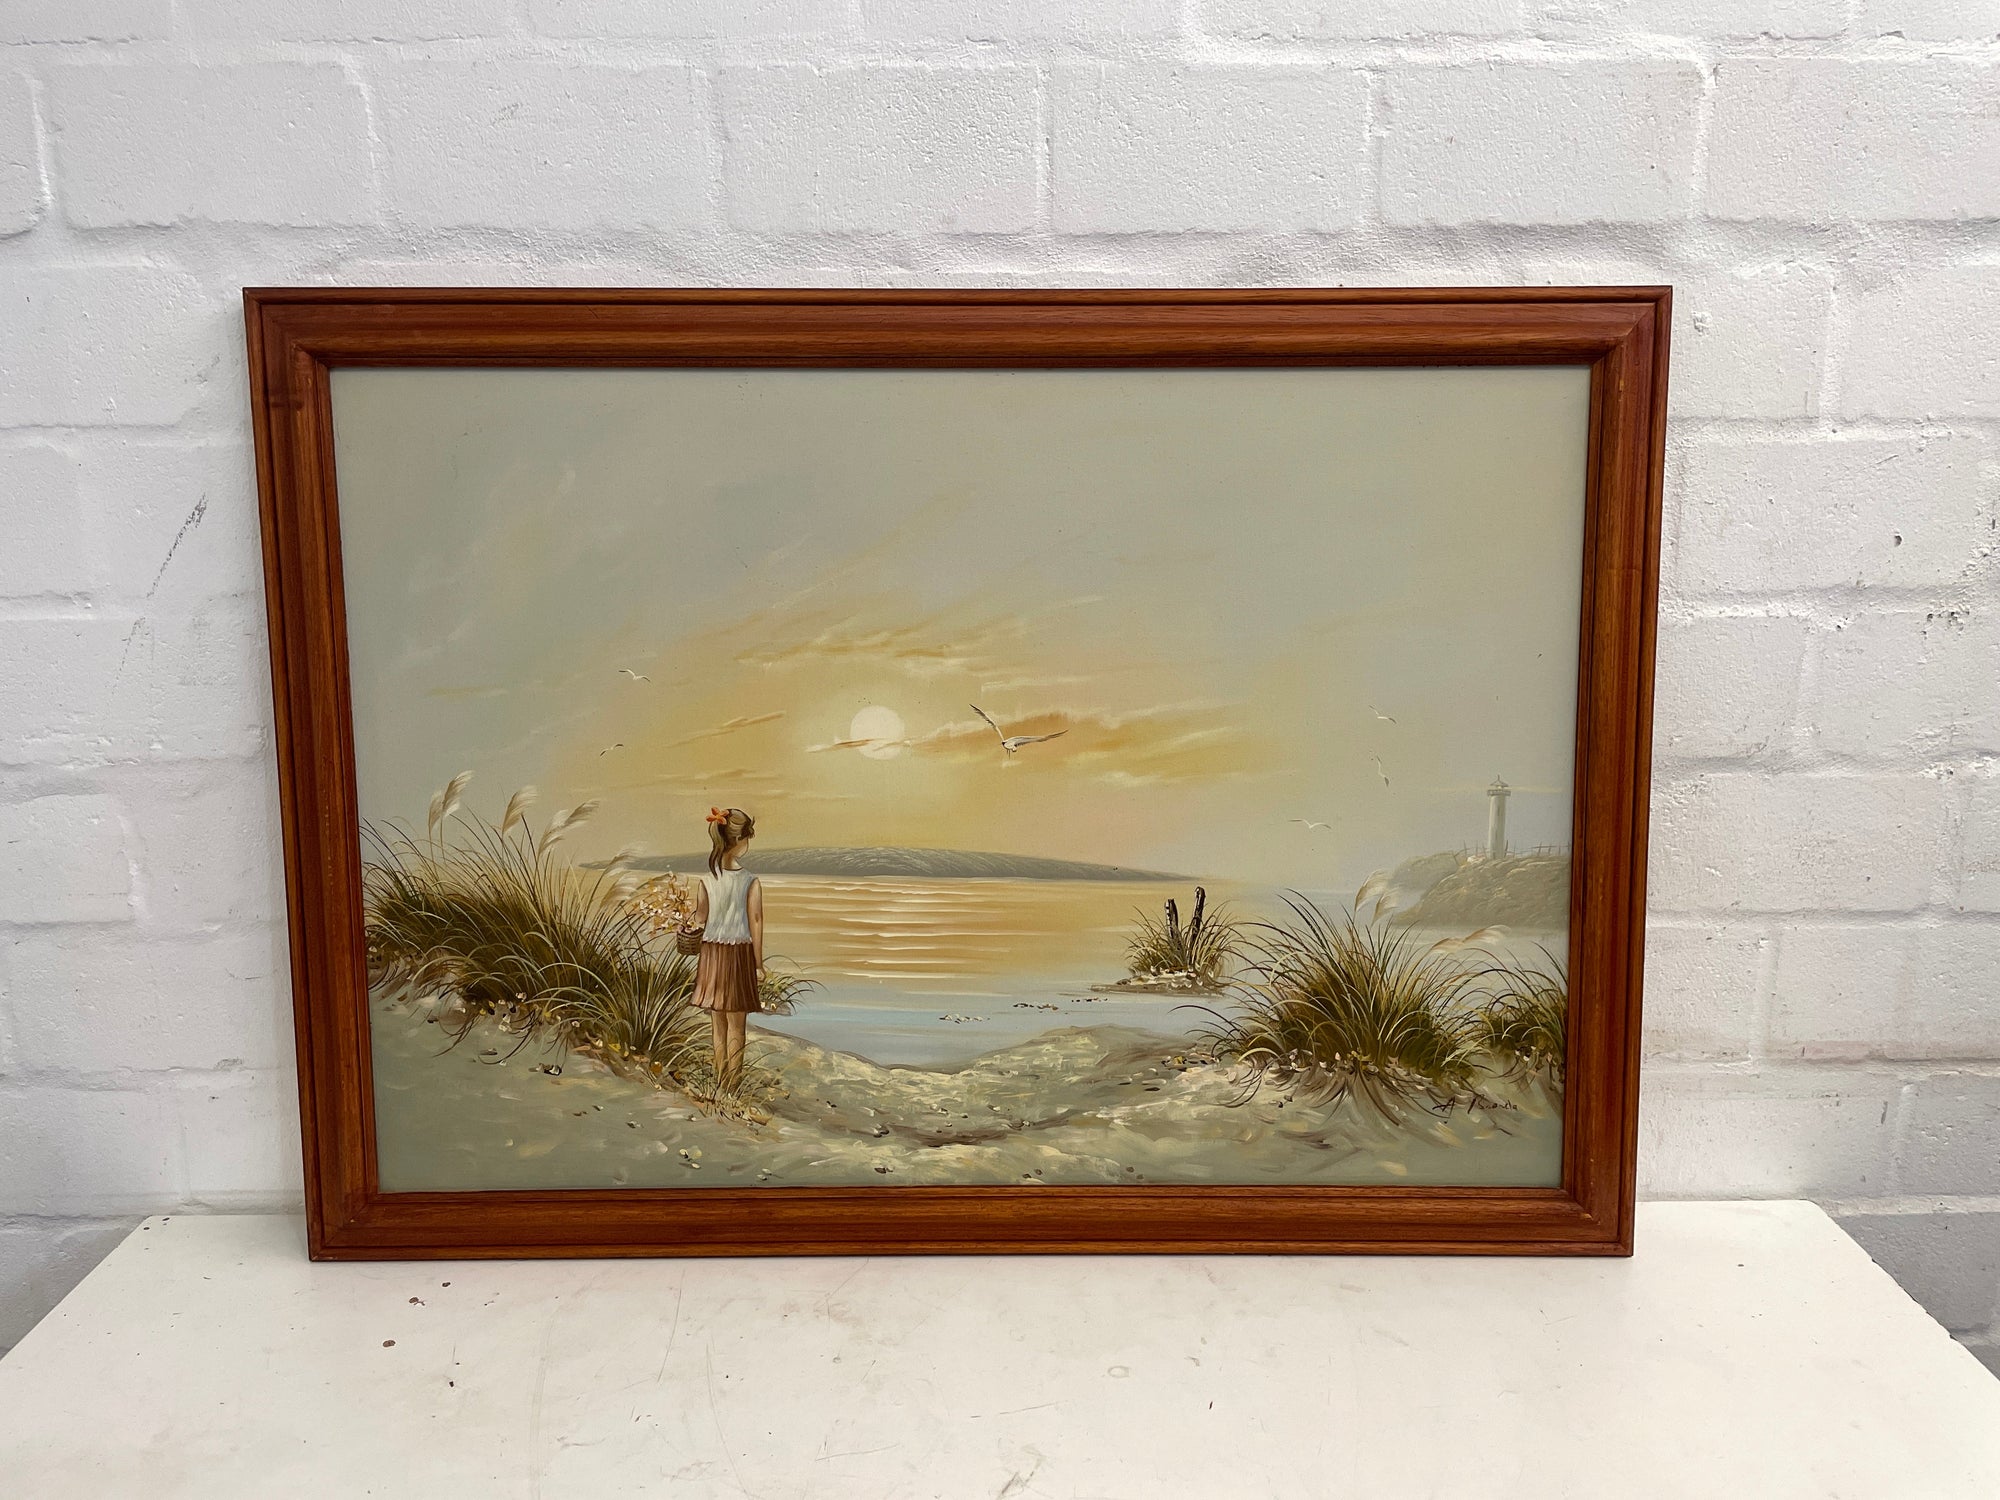 Little Girl on the Shore Framed Painting